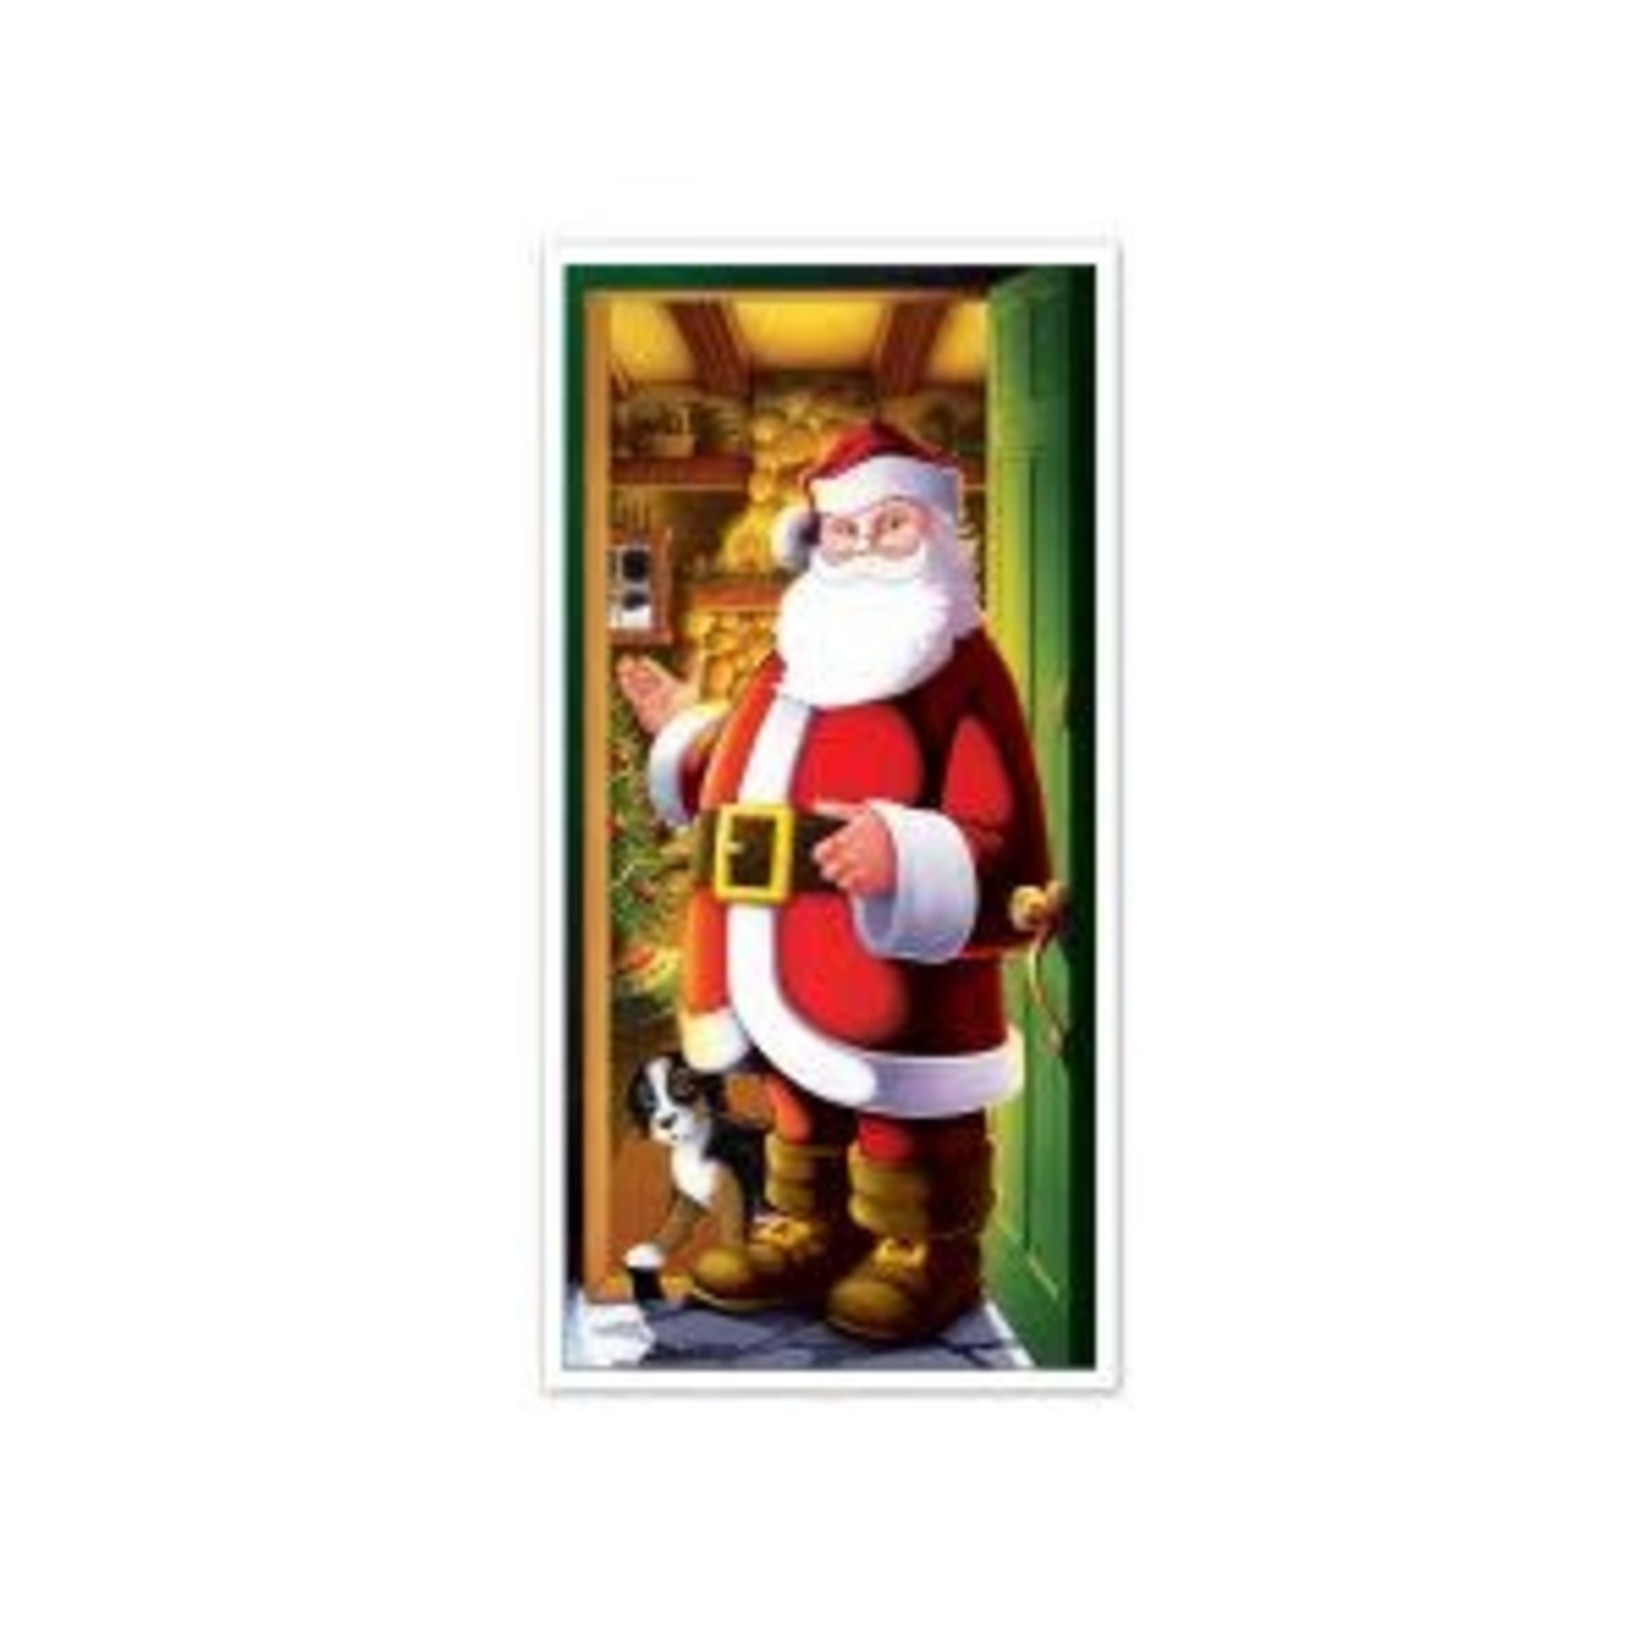 Beistle Welcoming Santa Door Cover - 1ct.